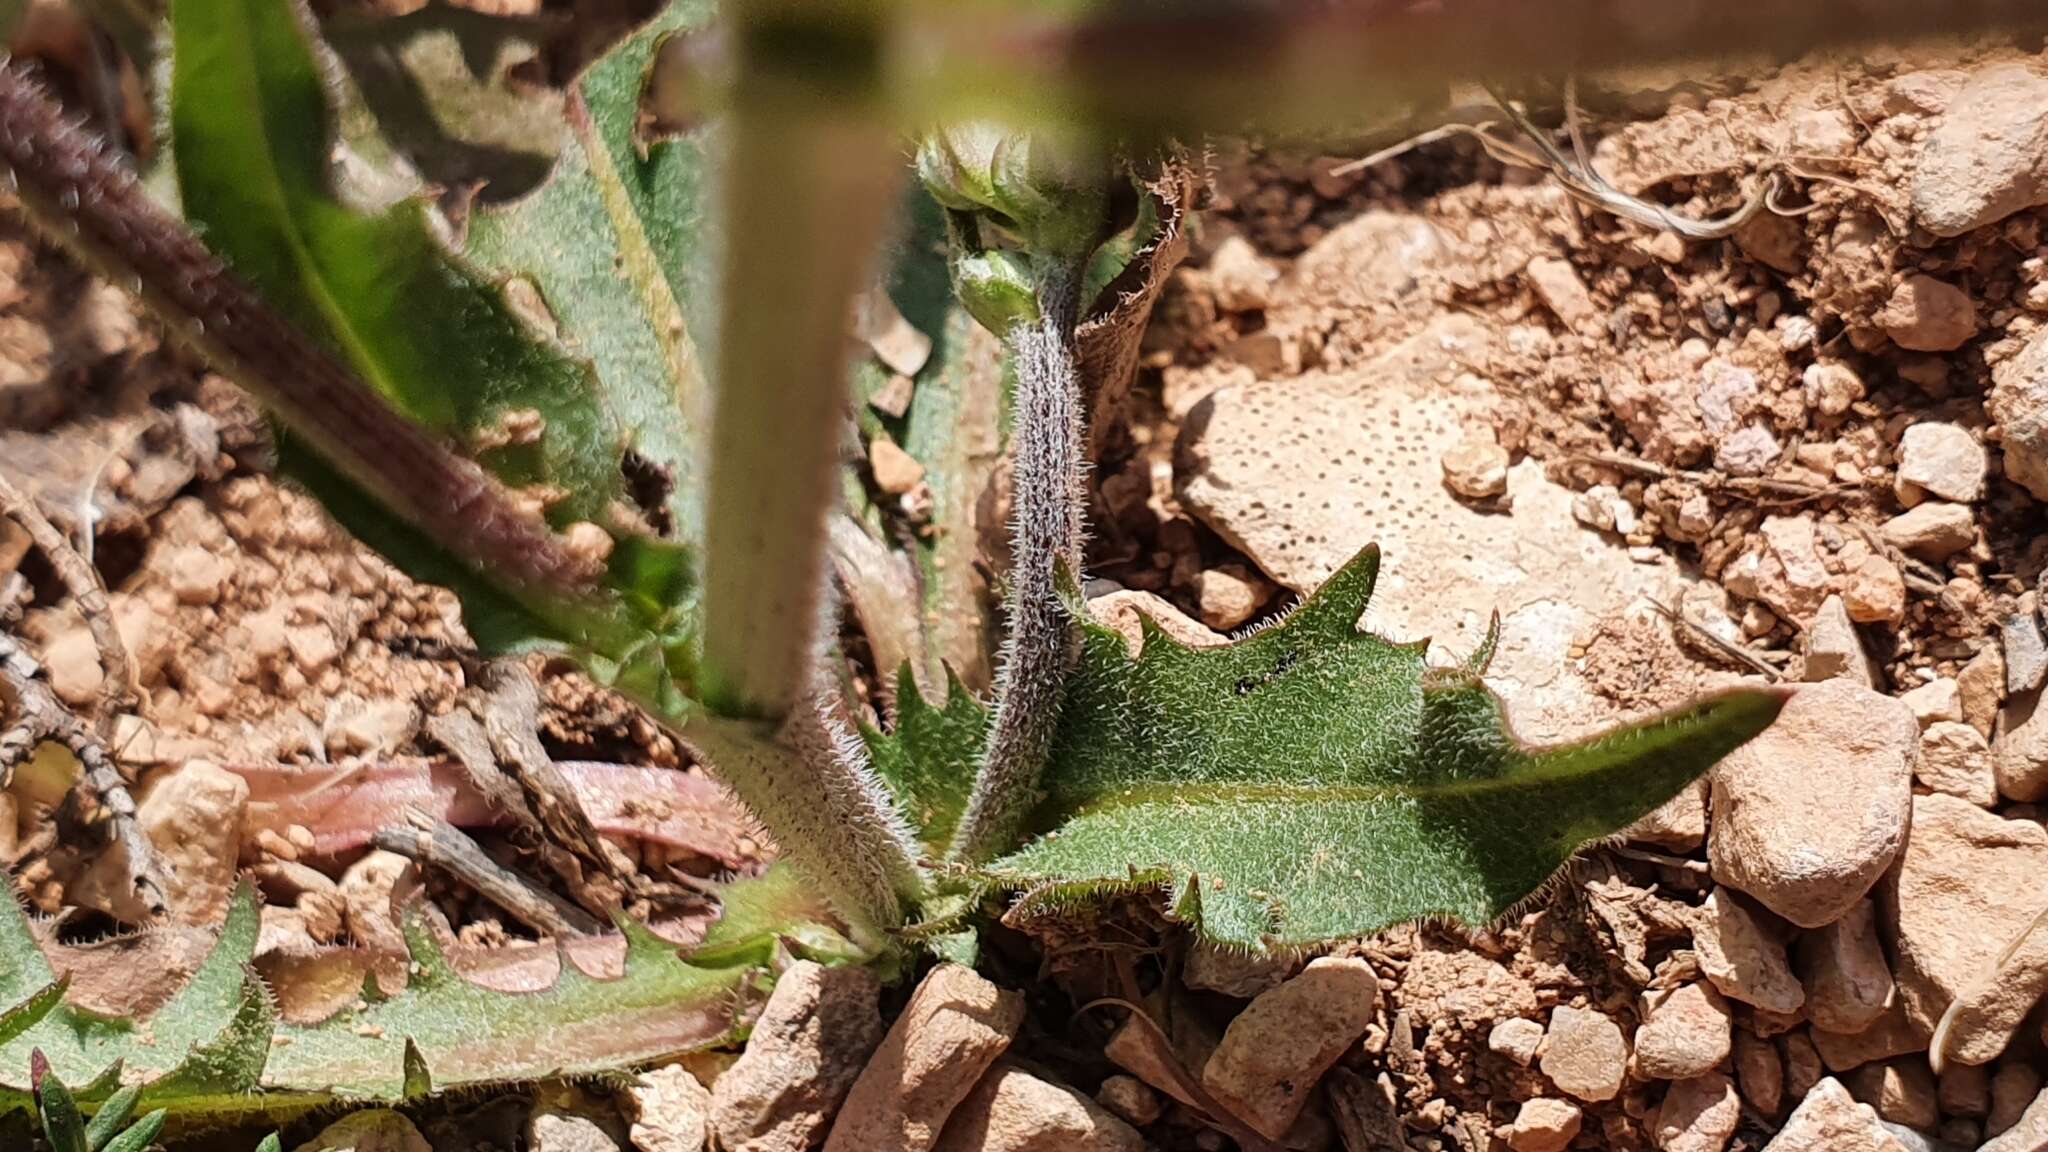 Image of Crepis vesicaria subsp. vesicaria